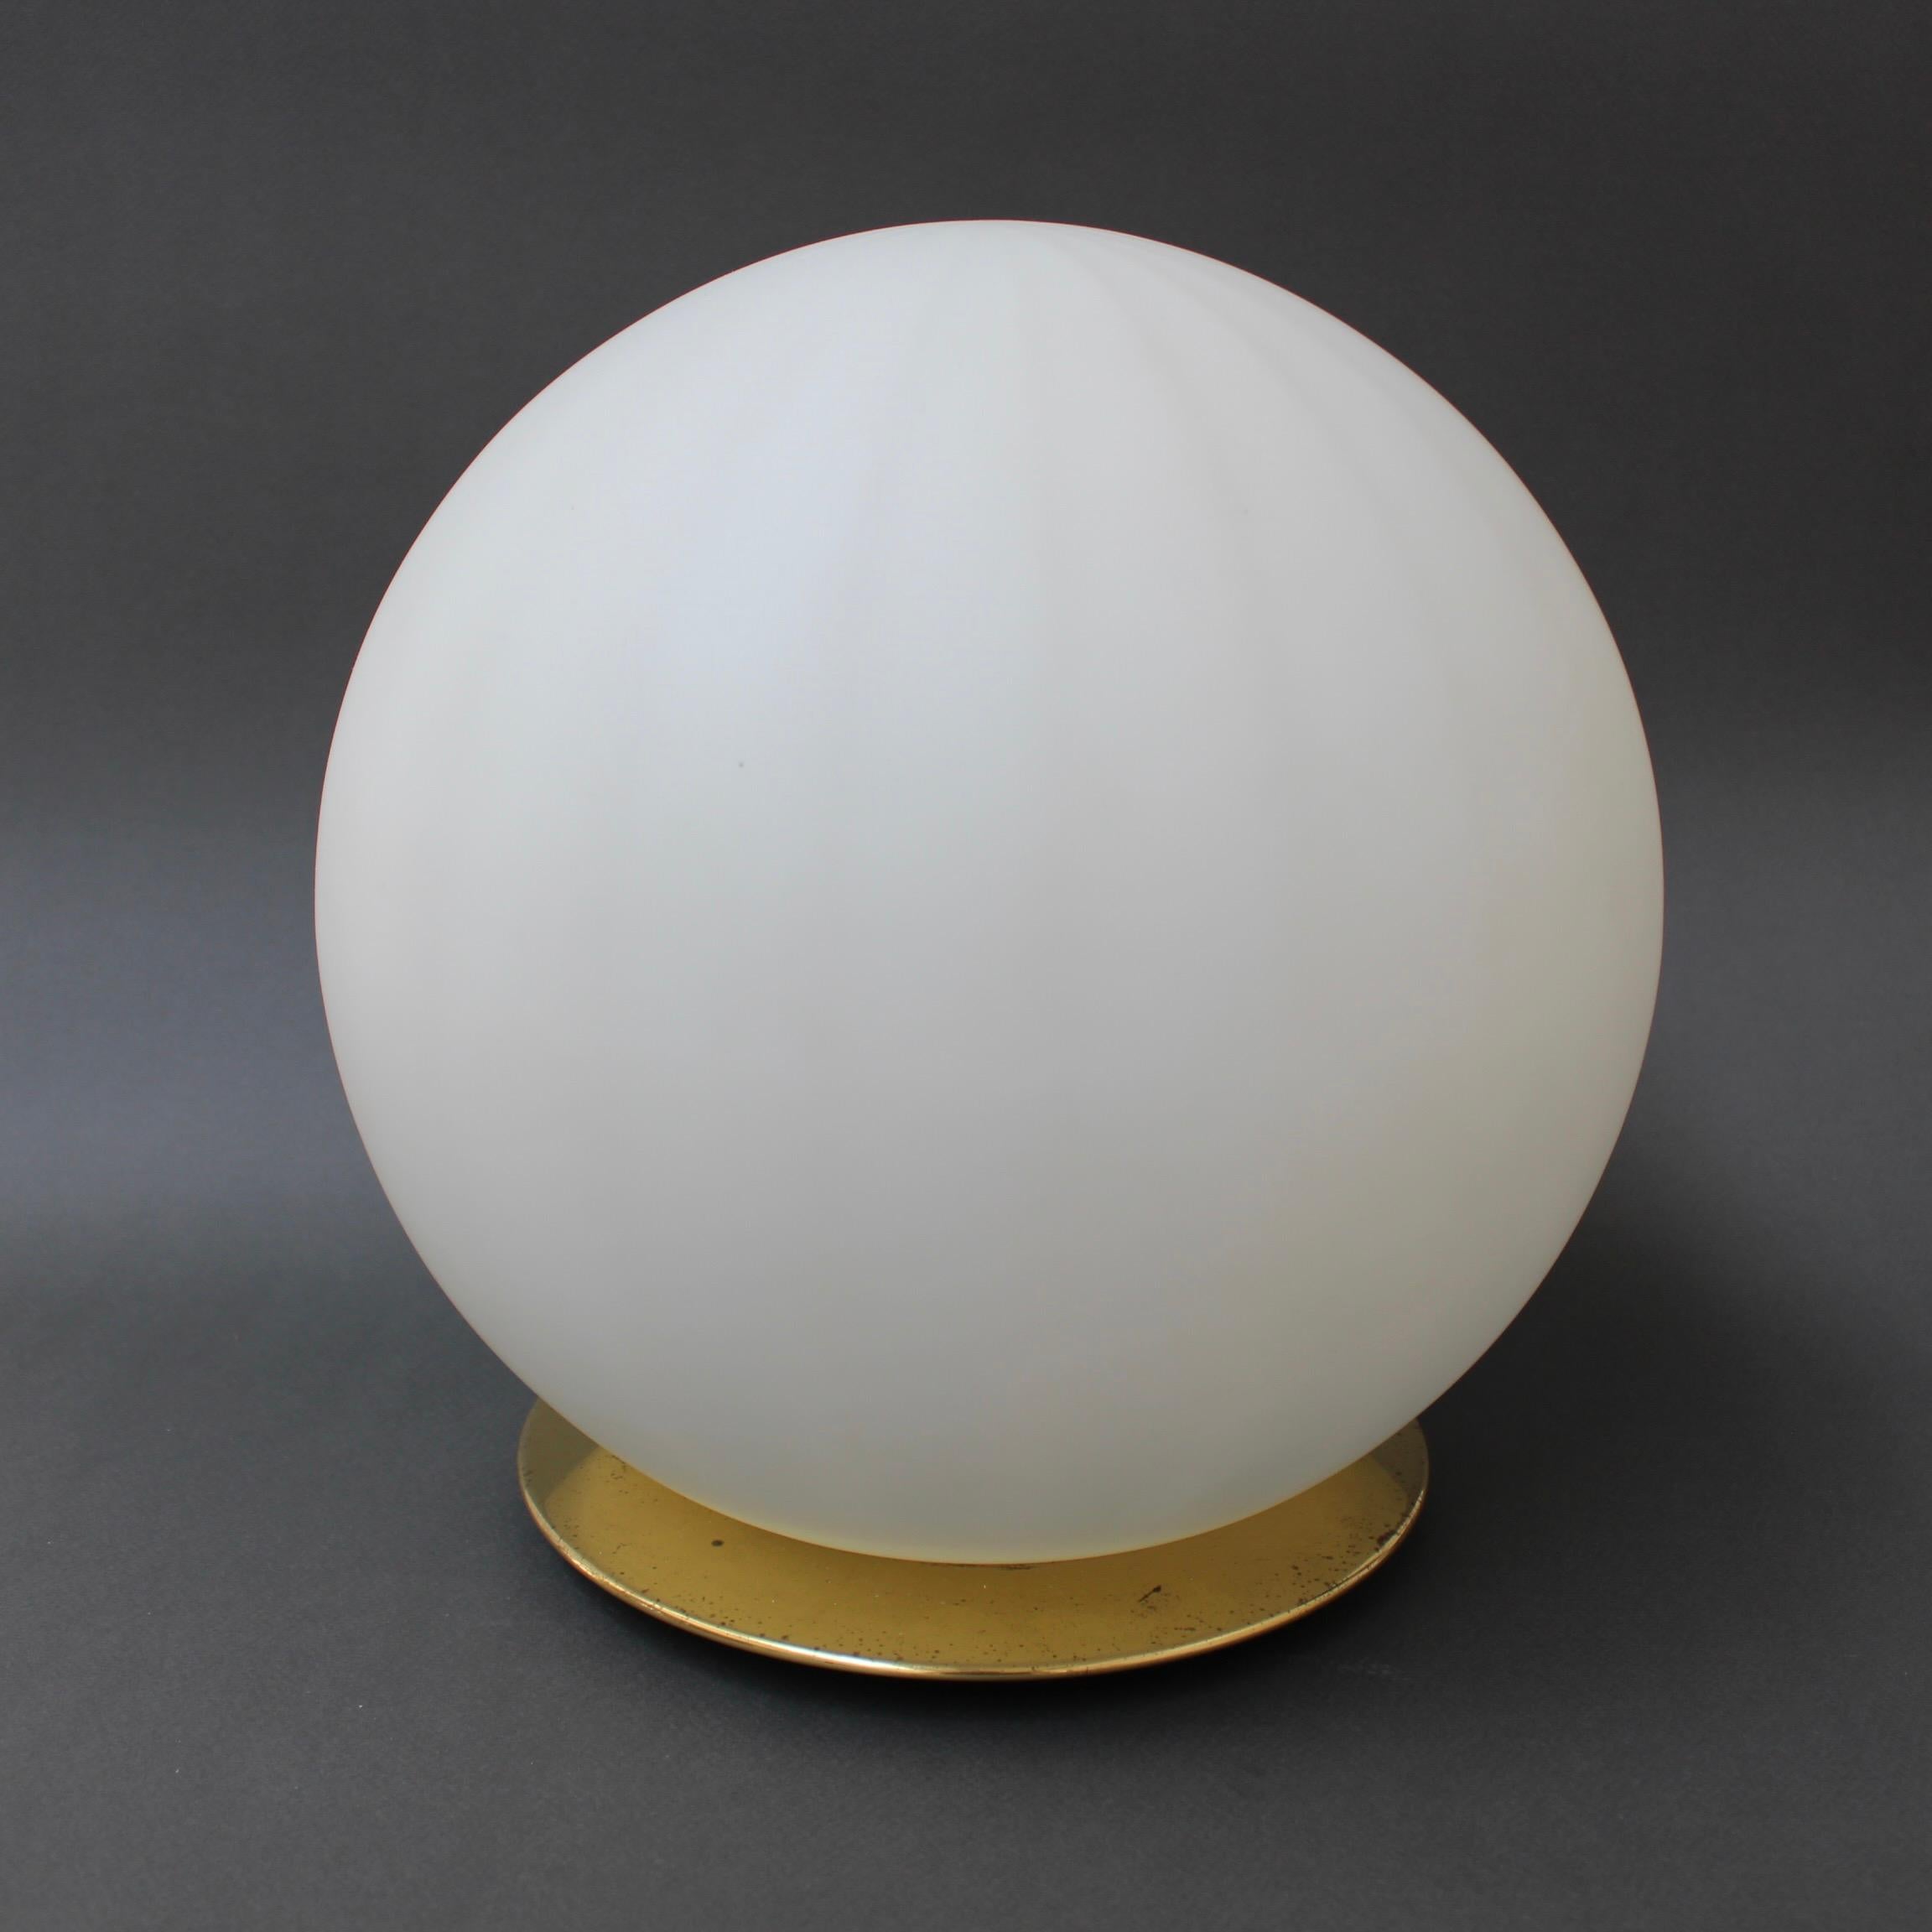 Eine italienische Muranoglas-Tischlampe aus den 1970er Jahren. Diese mundgeblasene Tischlampe aus Murano ist modern und elegant und bietet eine Lichtquelle, die sowohl nützlich als auch dekorativ ist. Die subtilen Längslinien fangen die